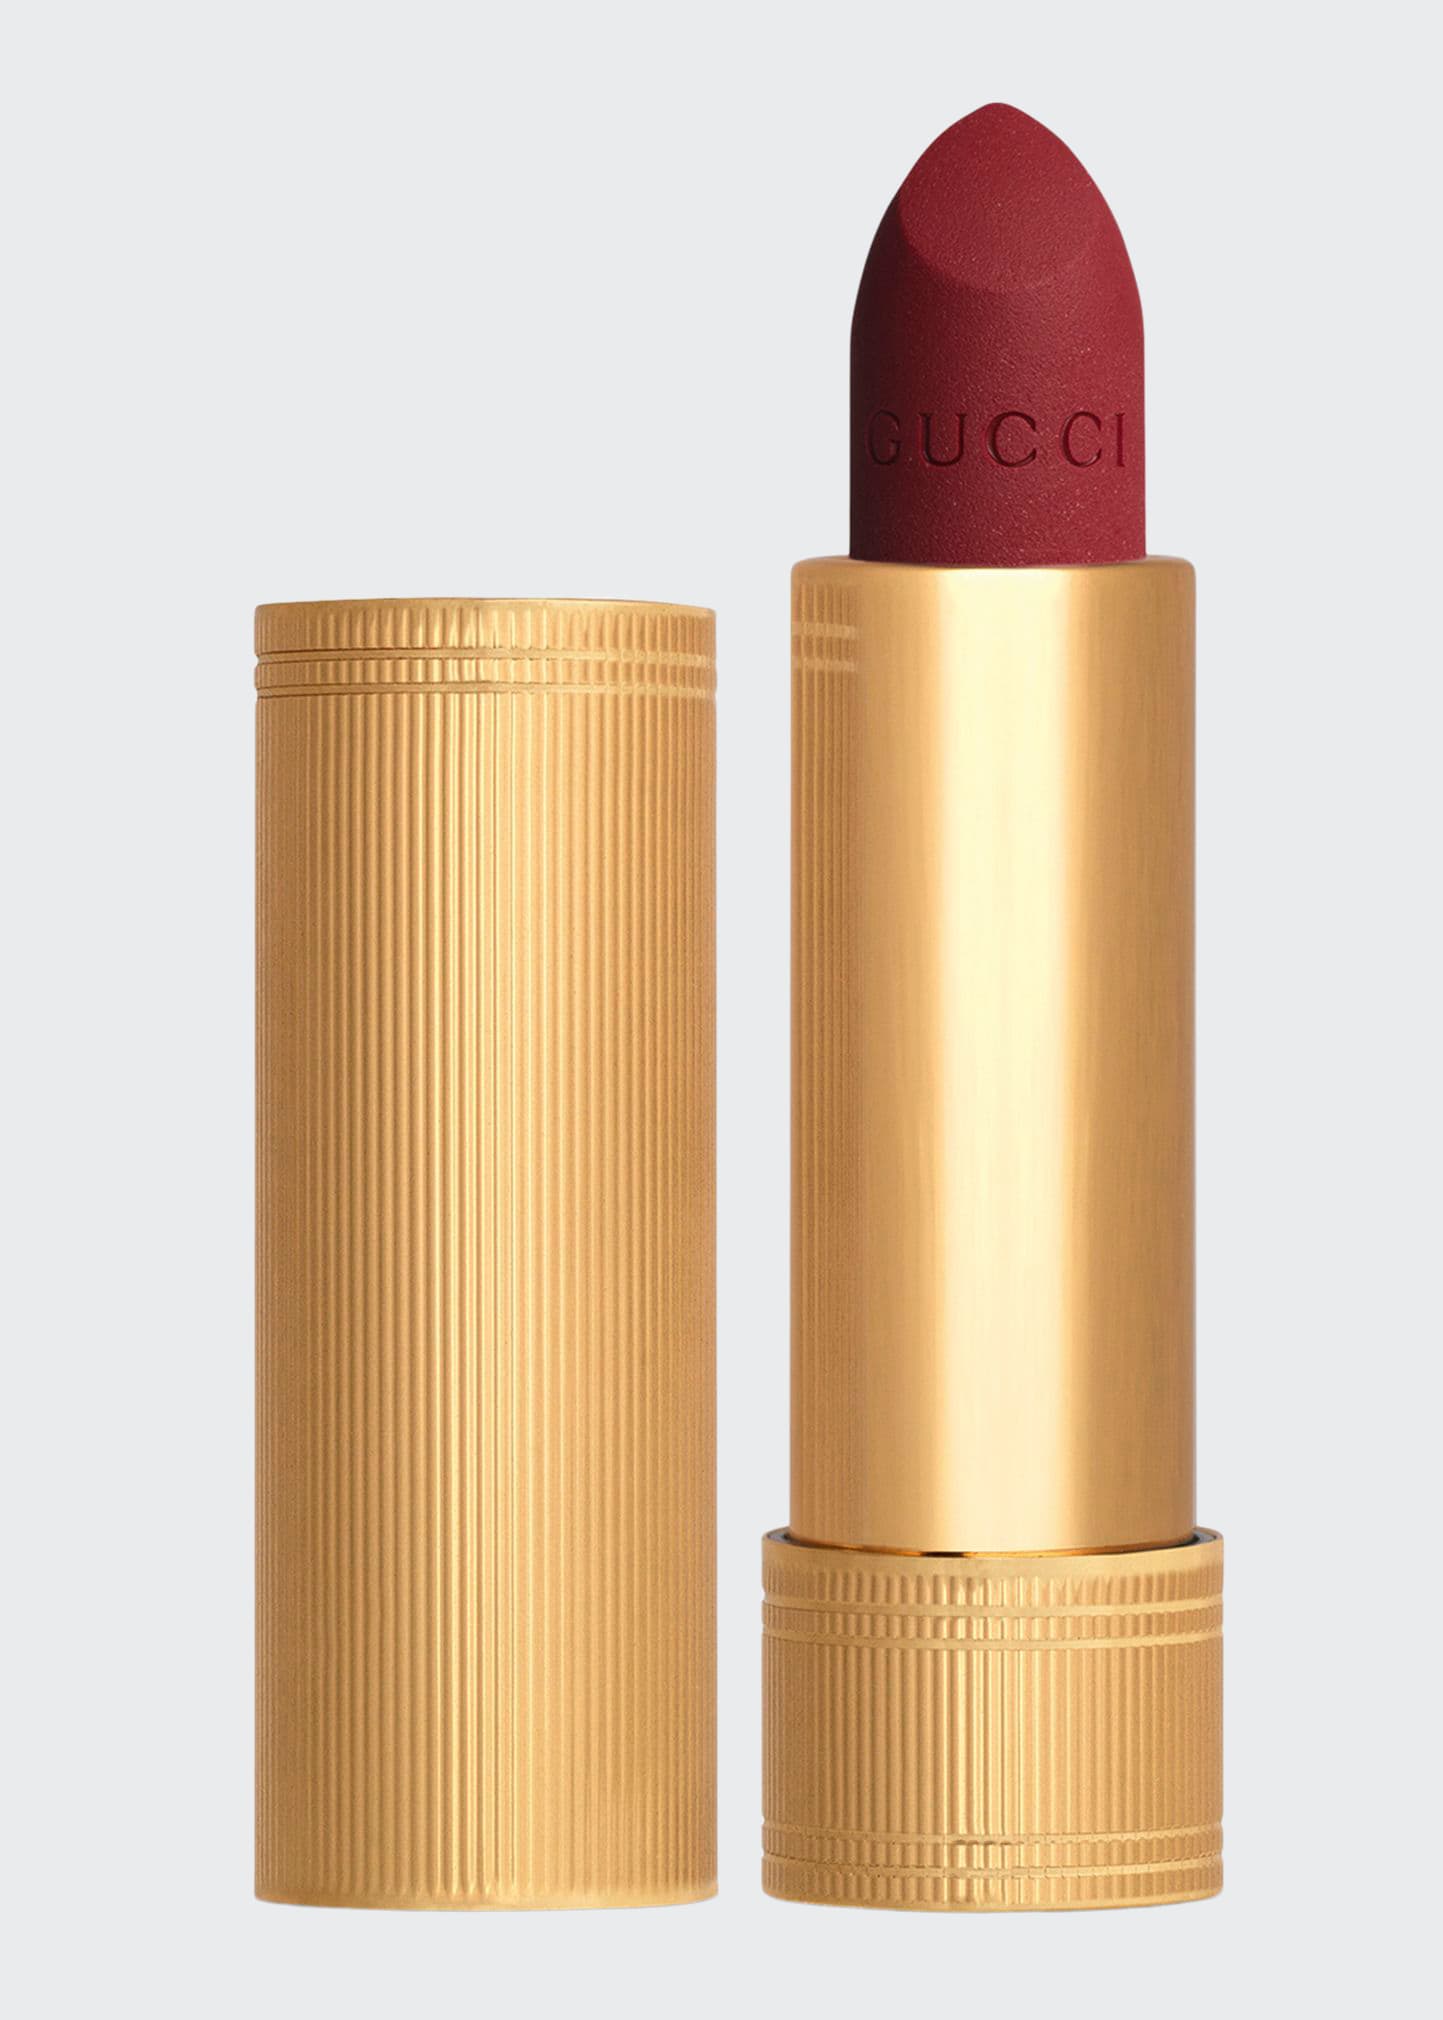 Gucci Rouge A Levres Matte Lipstick In 504 Myra Crimson